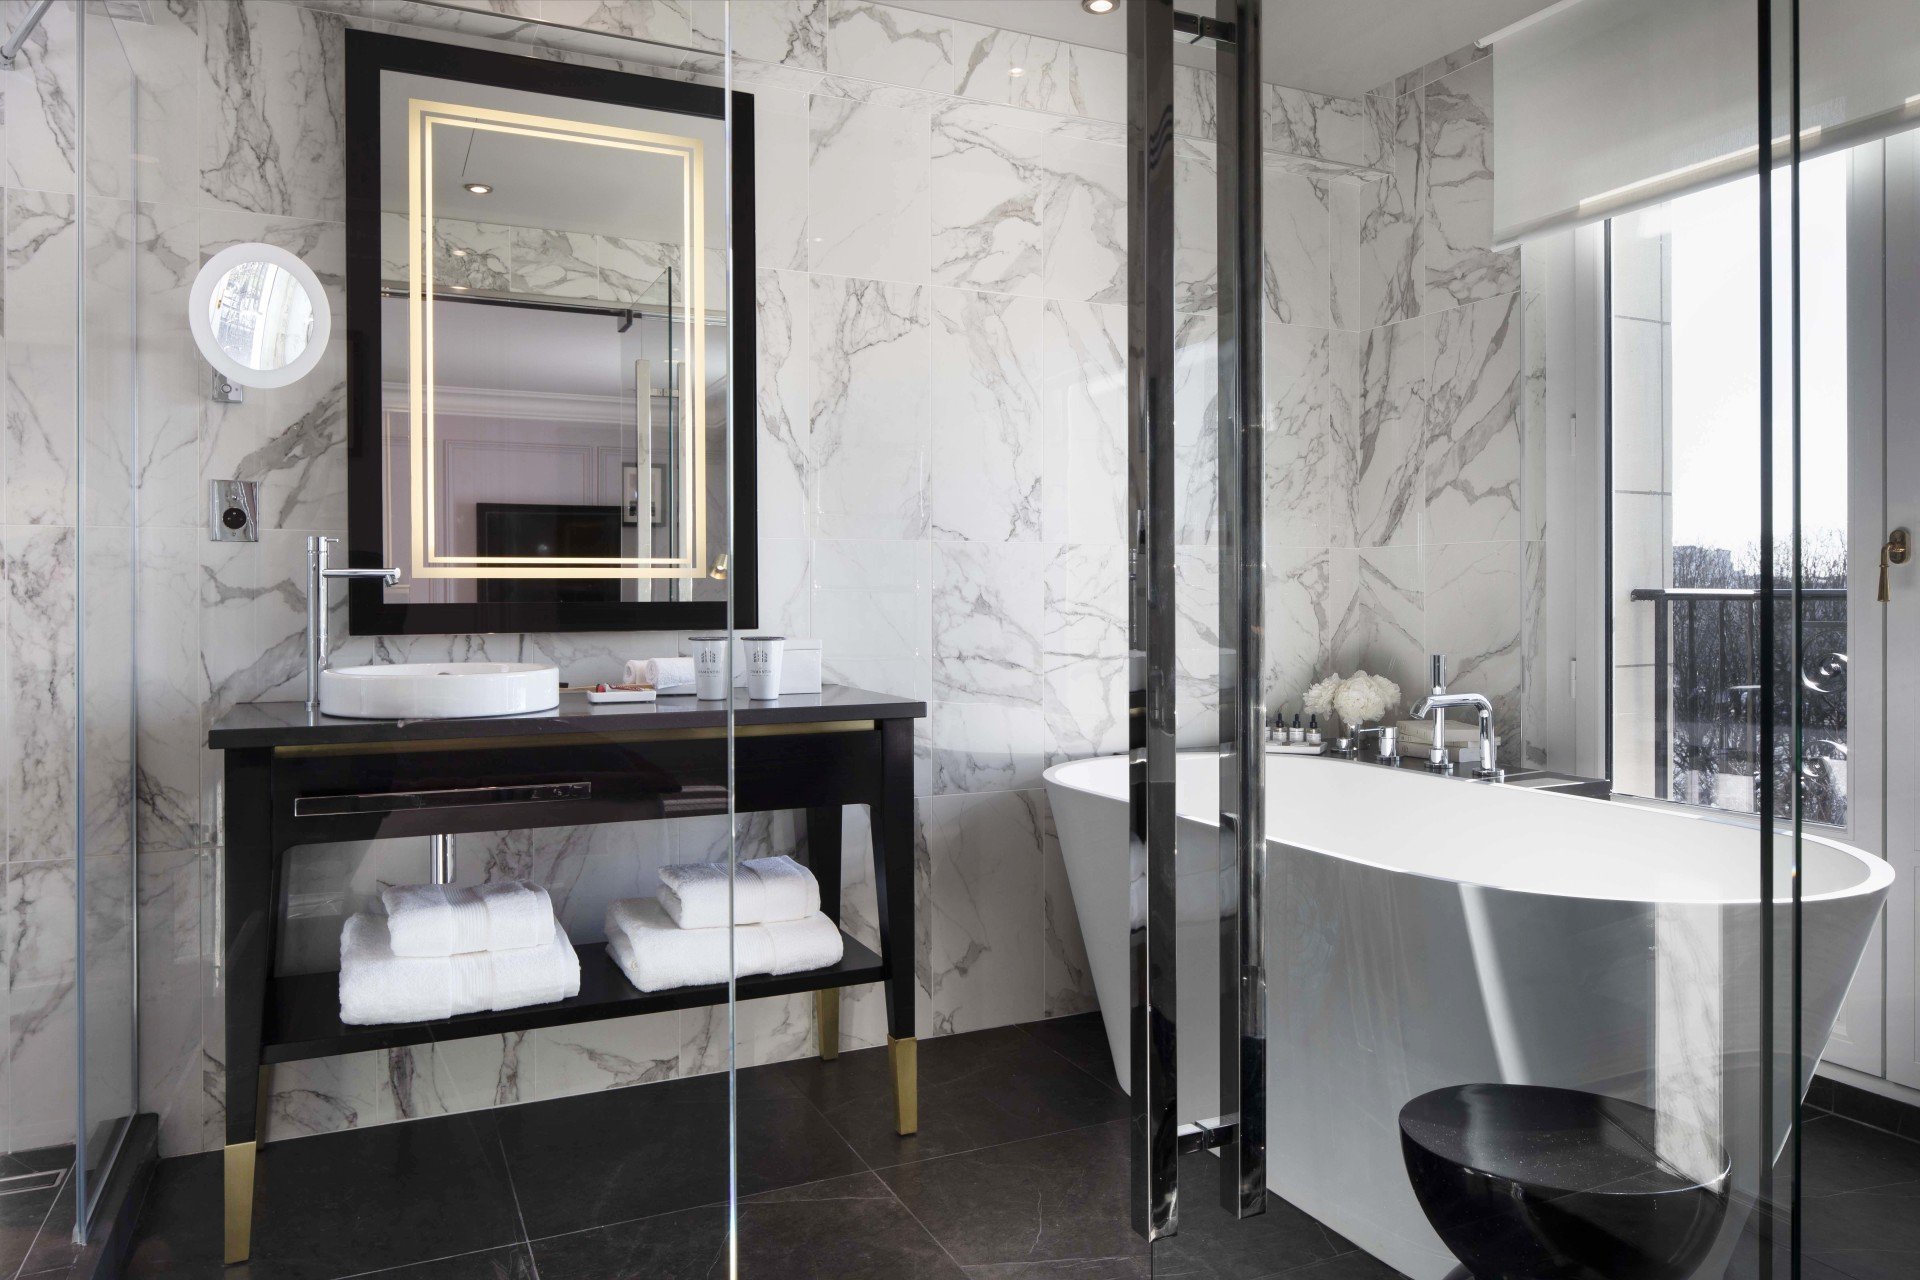 Hotel et Spa Le Damantin Paris - hôtel de luxe designé par le studio d'architecture d'intérieur jean-philippe nuel - salle de bain luxueuse, marbre, baignoire et douche